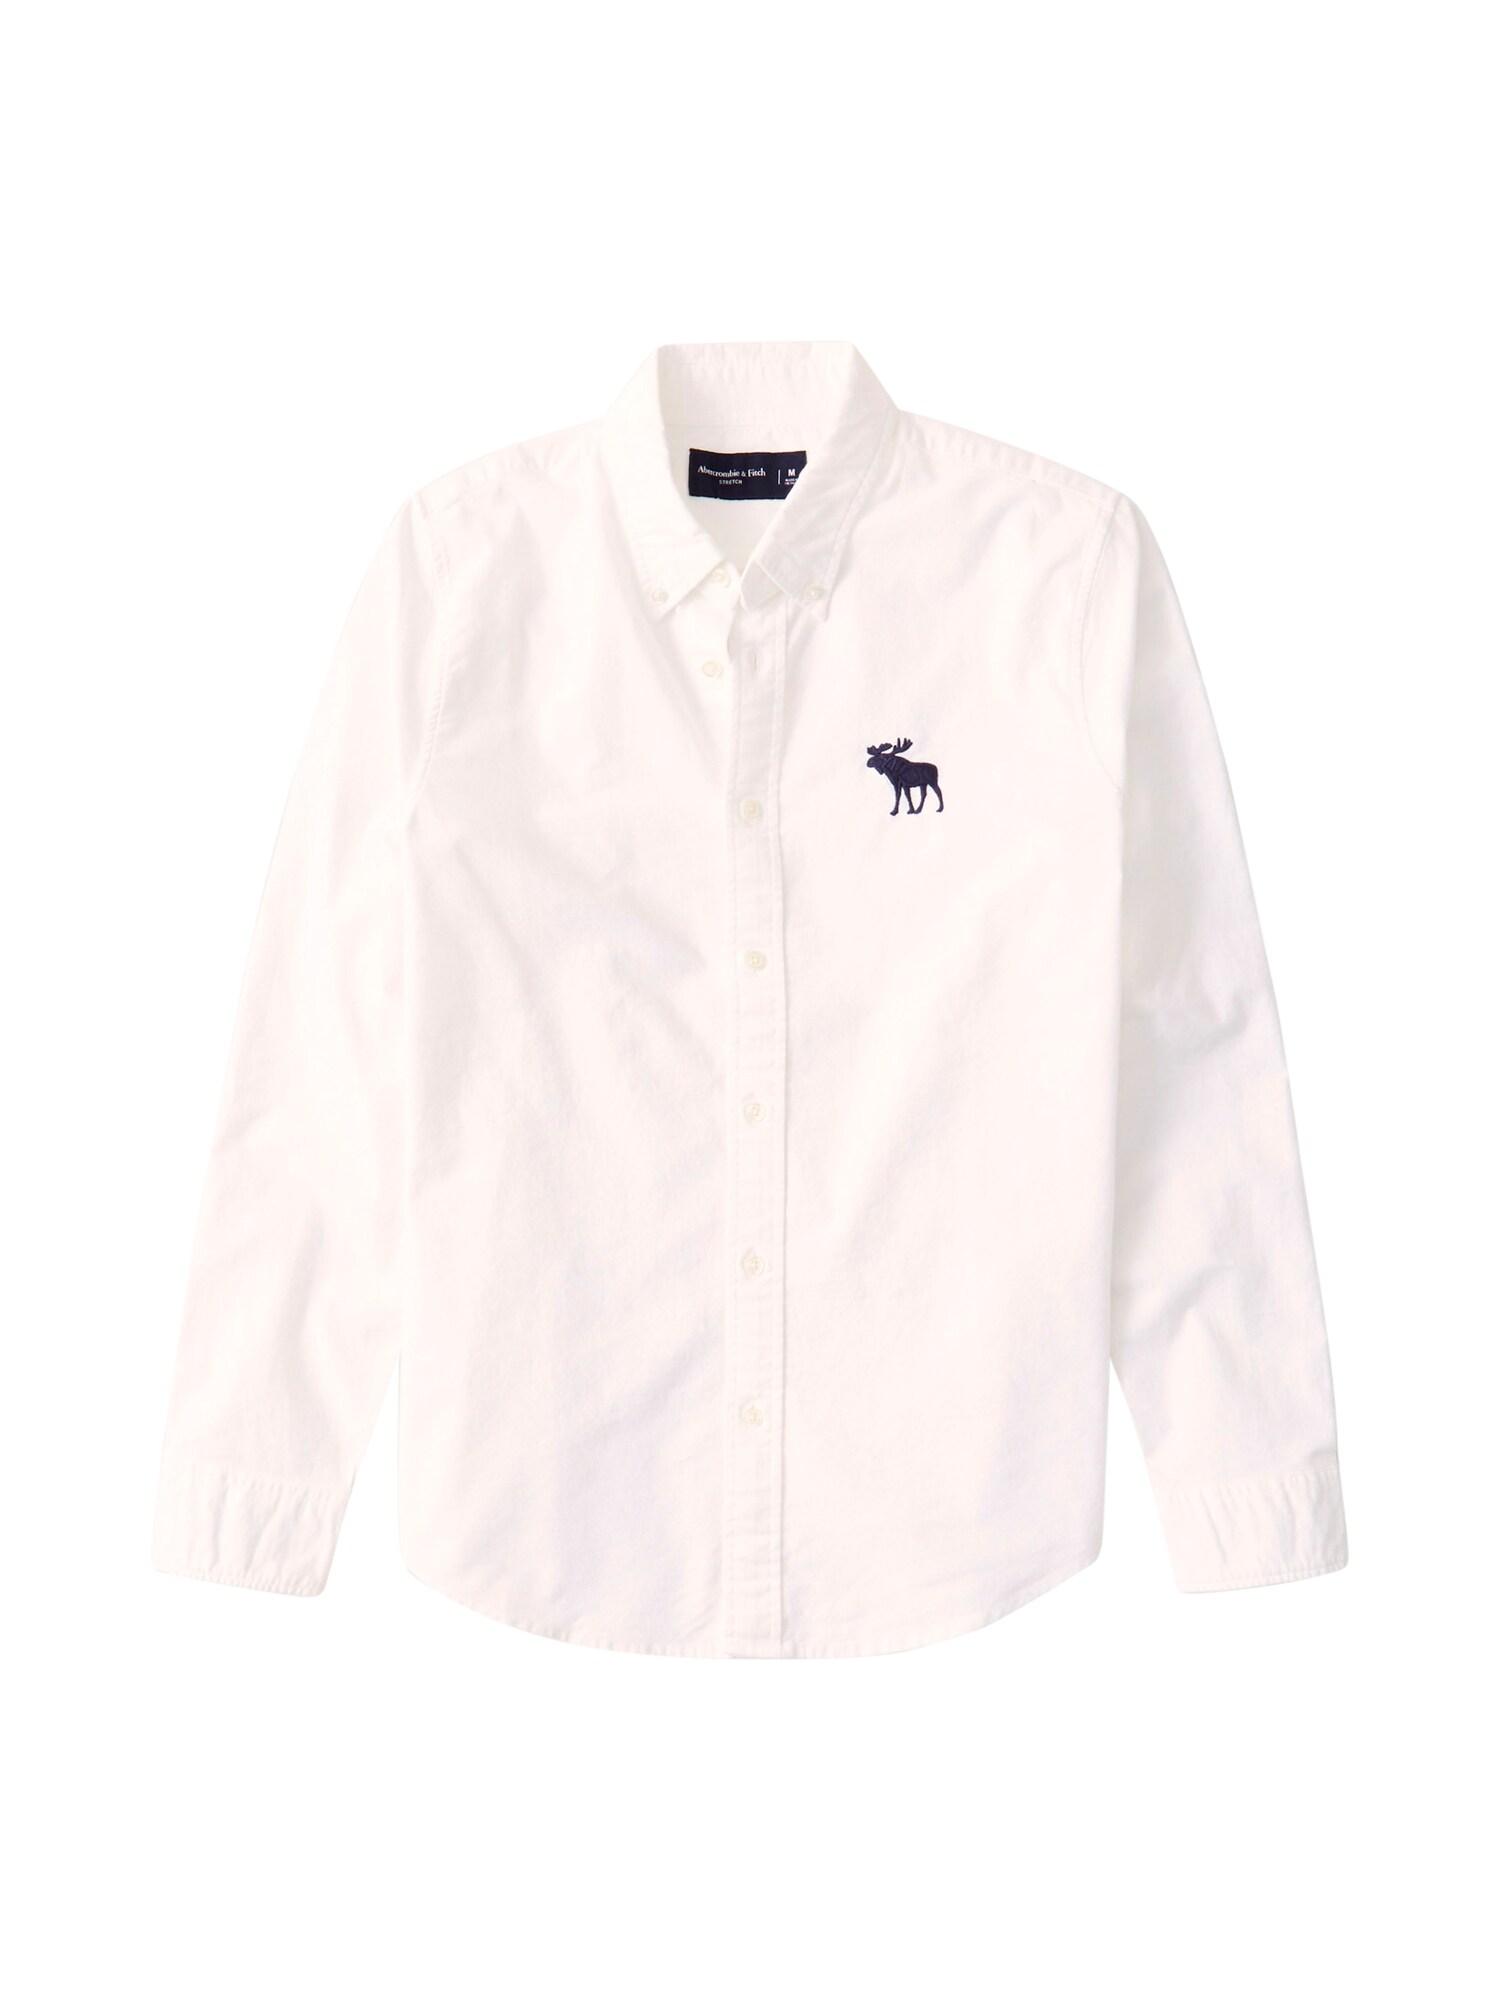 Abercrombie & Fitch Dalykiniai marškiniai  balta